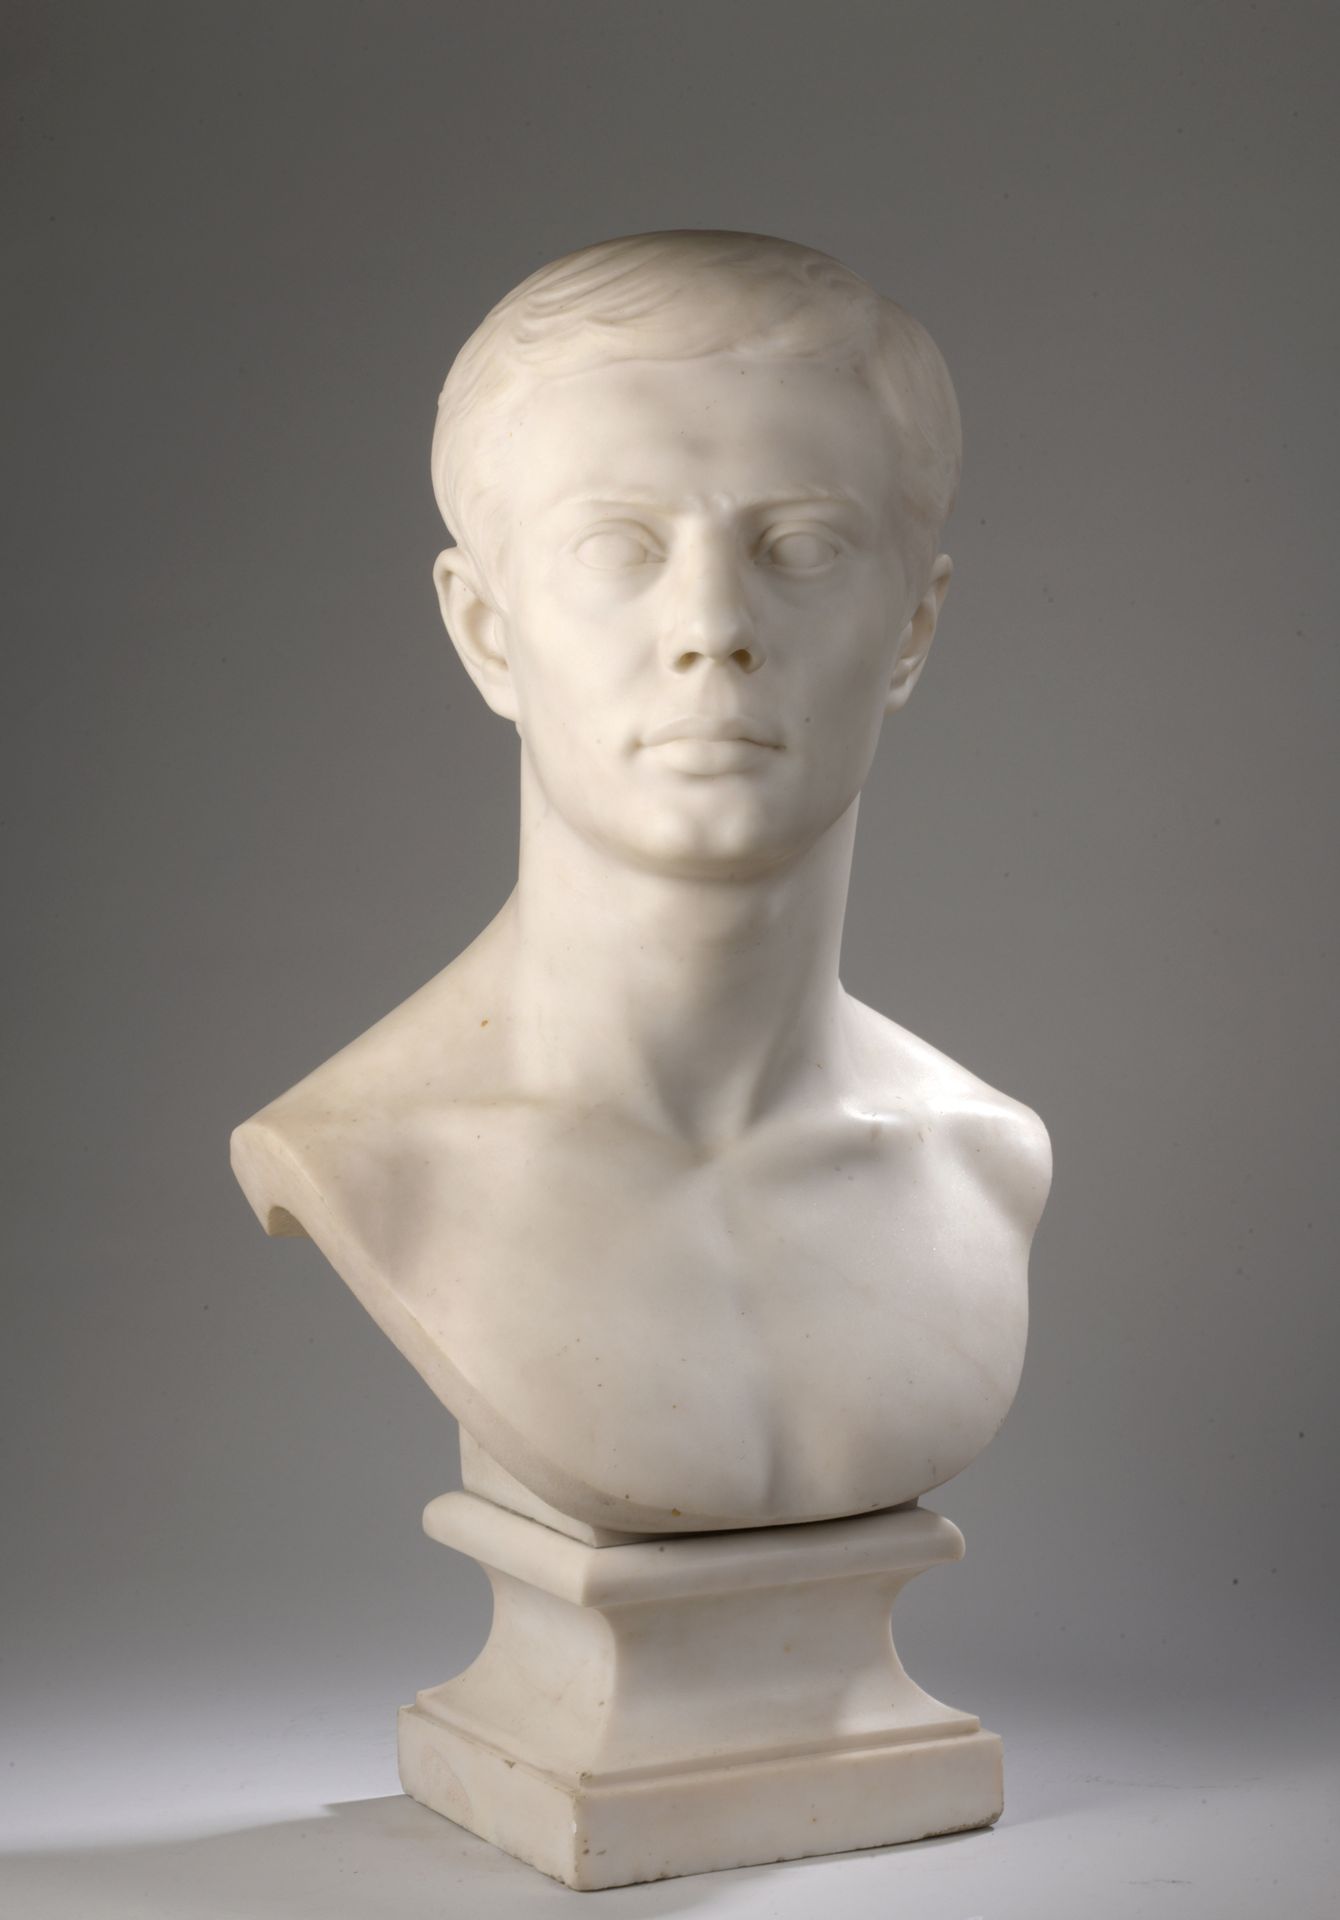 Null Henri Frédéric ISELIN (1825-1905)

年轻罗马人的半身像或观察

白色大理石的半身像。

左肩下有签名 "H.F IS&hellip;